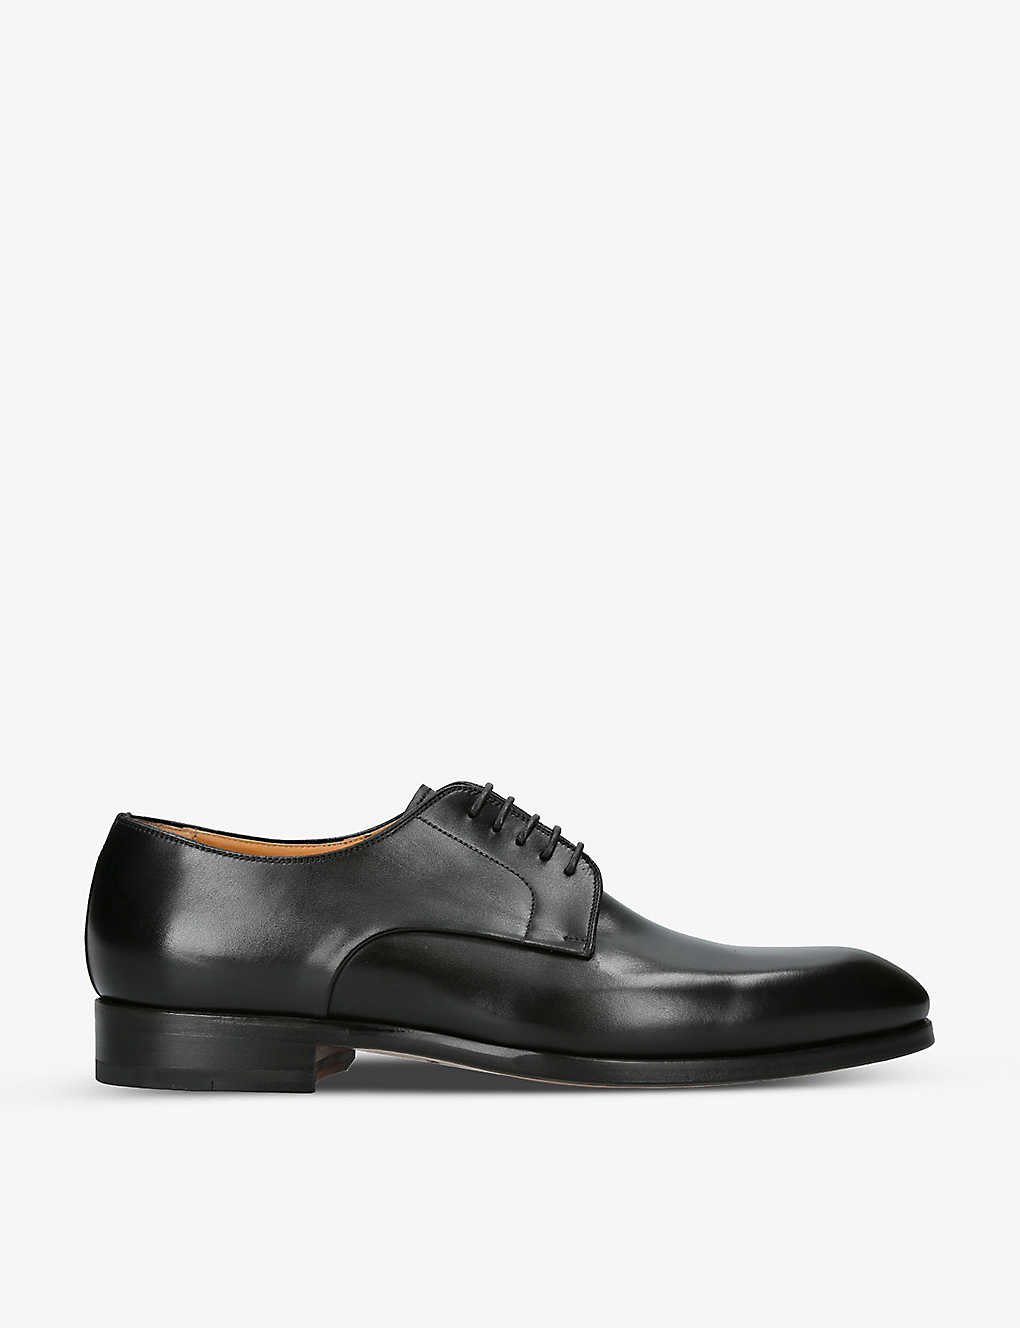 Shop Magnanni Men's Black Contemporary Leather Derby Shoes